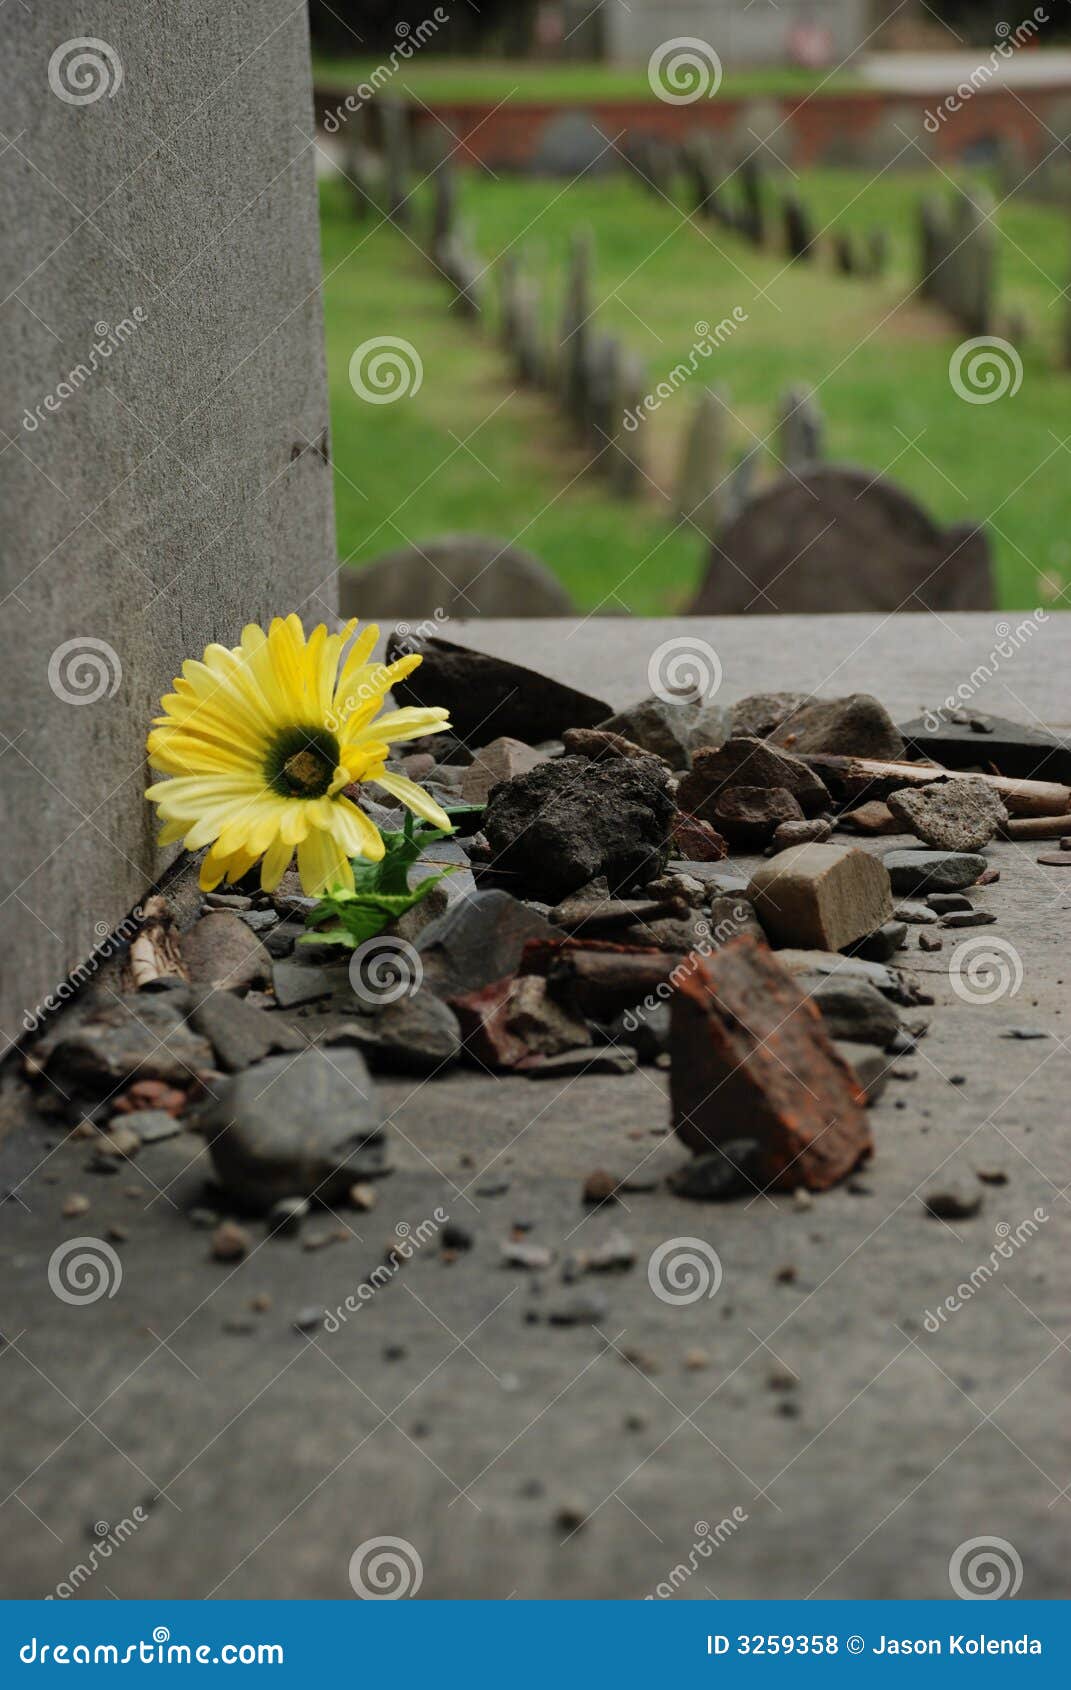 flower in rubble